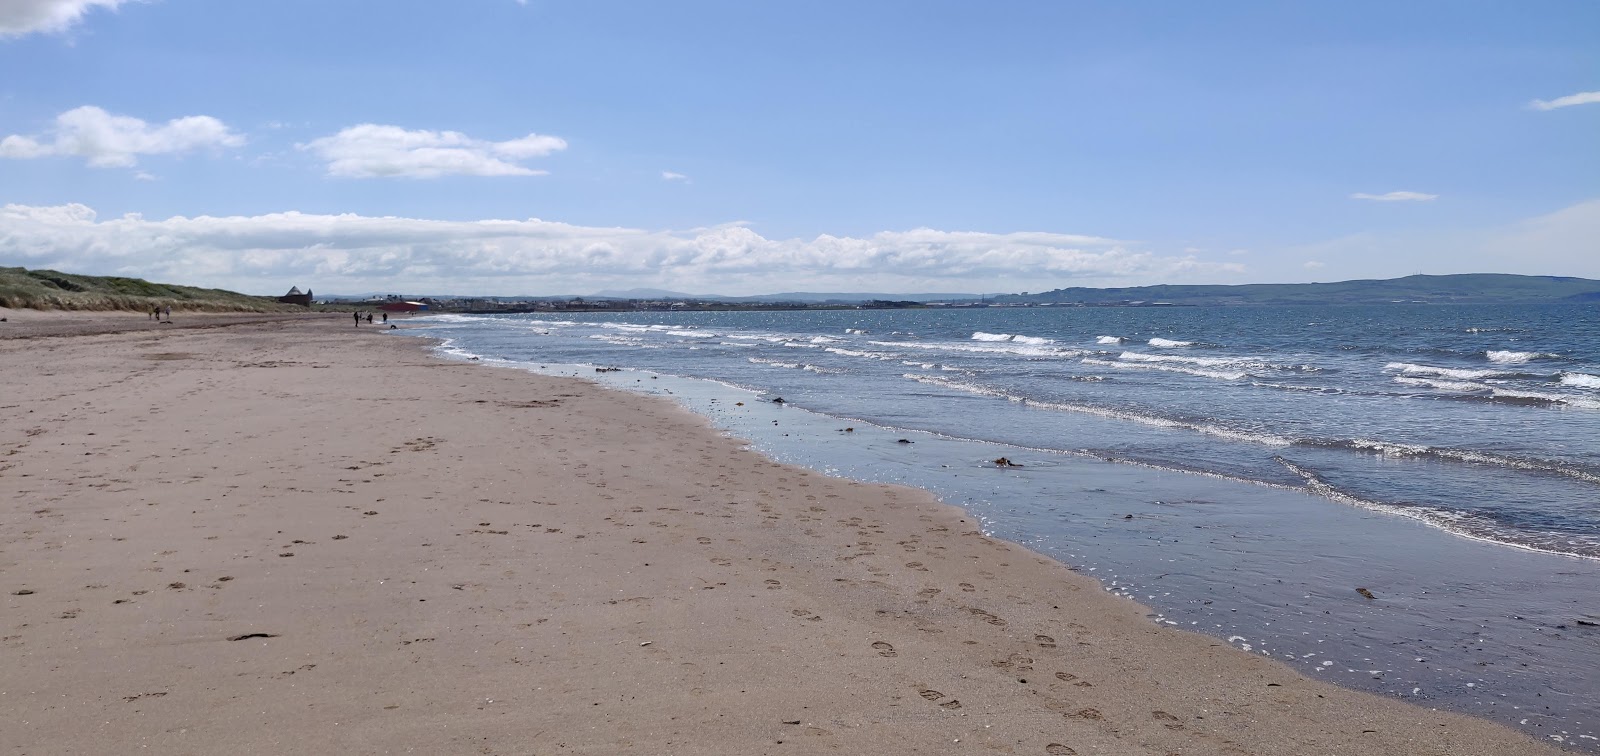 Prestwick Plajı'in fotoğrafı geniş plaj ile birlikte